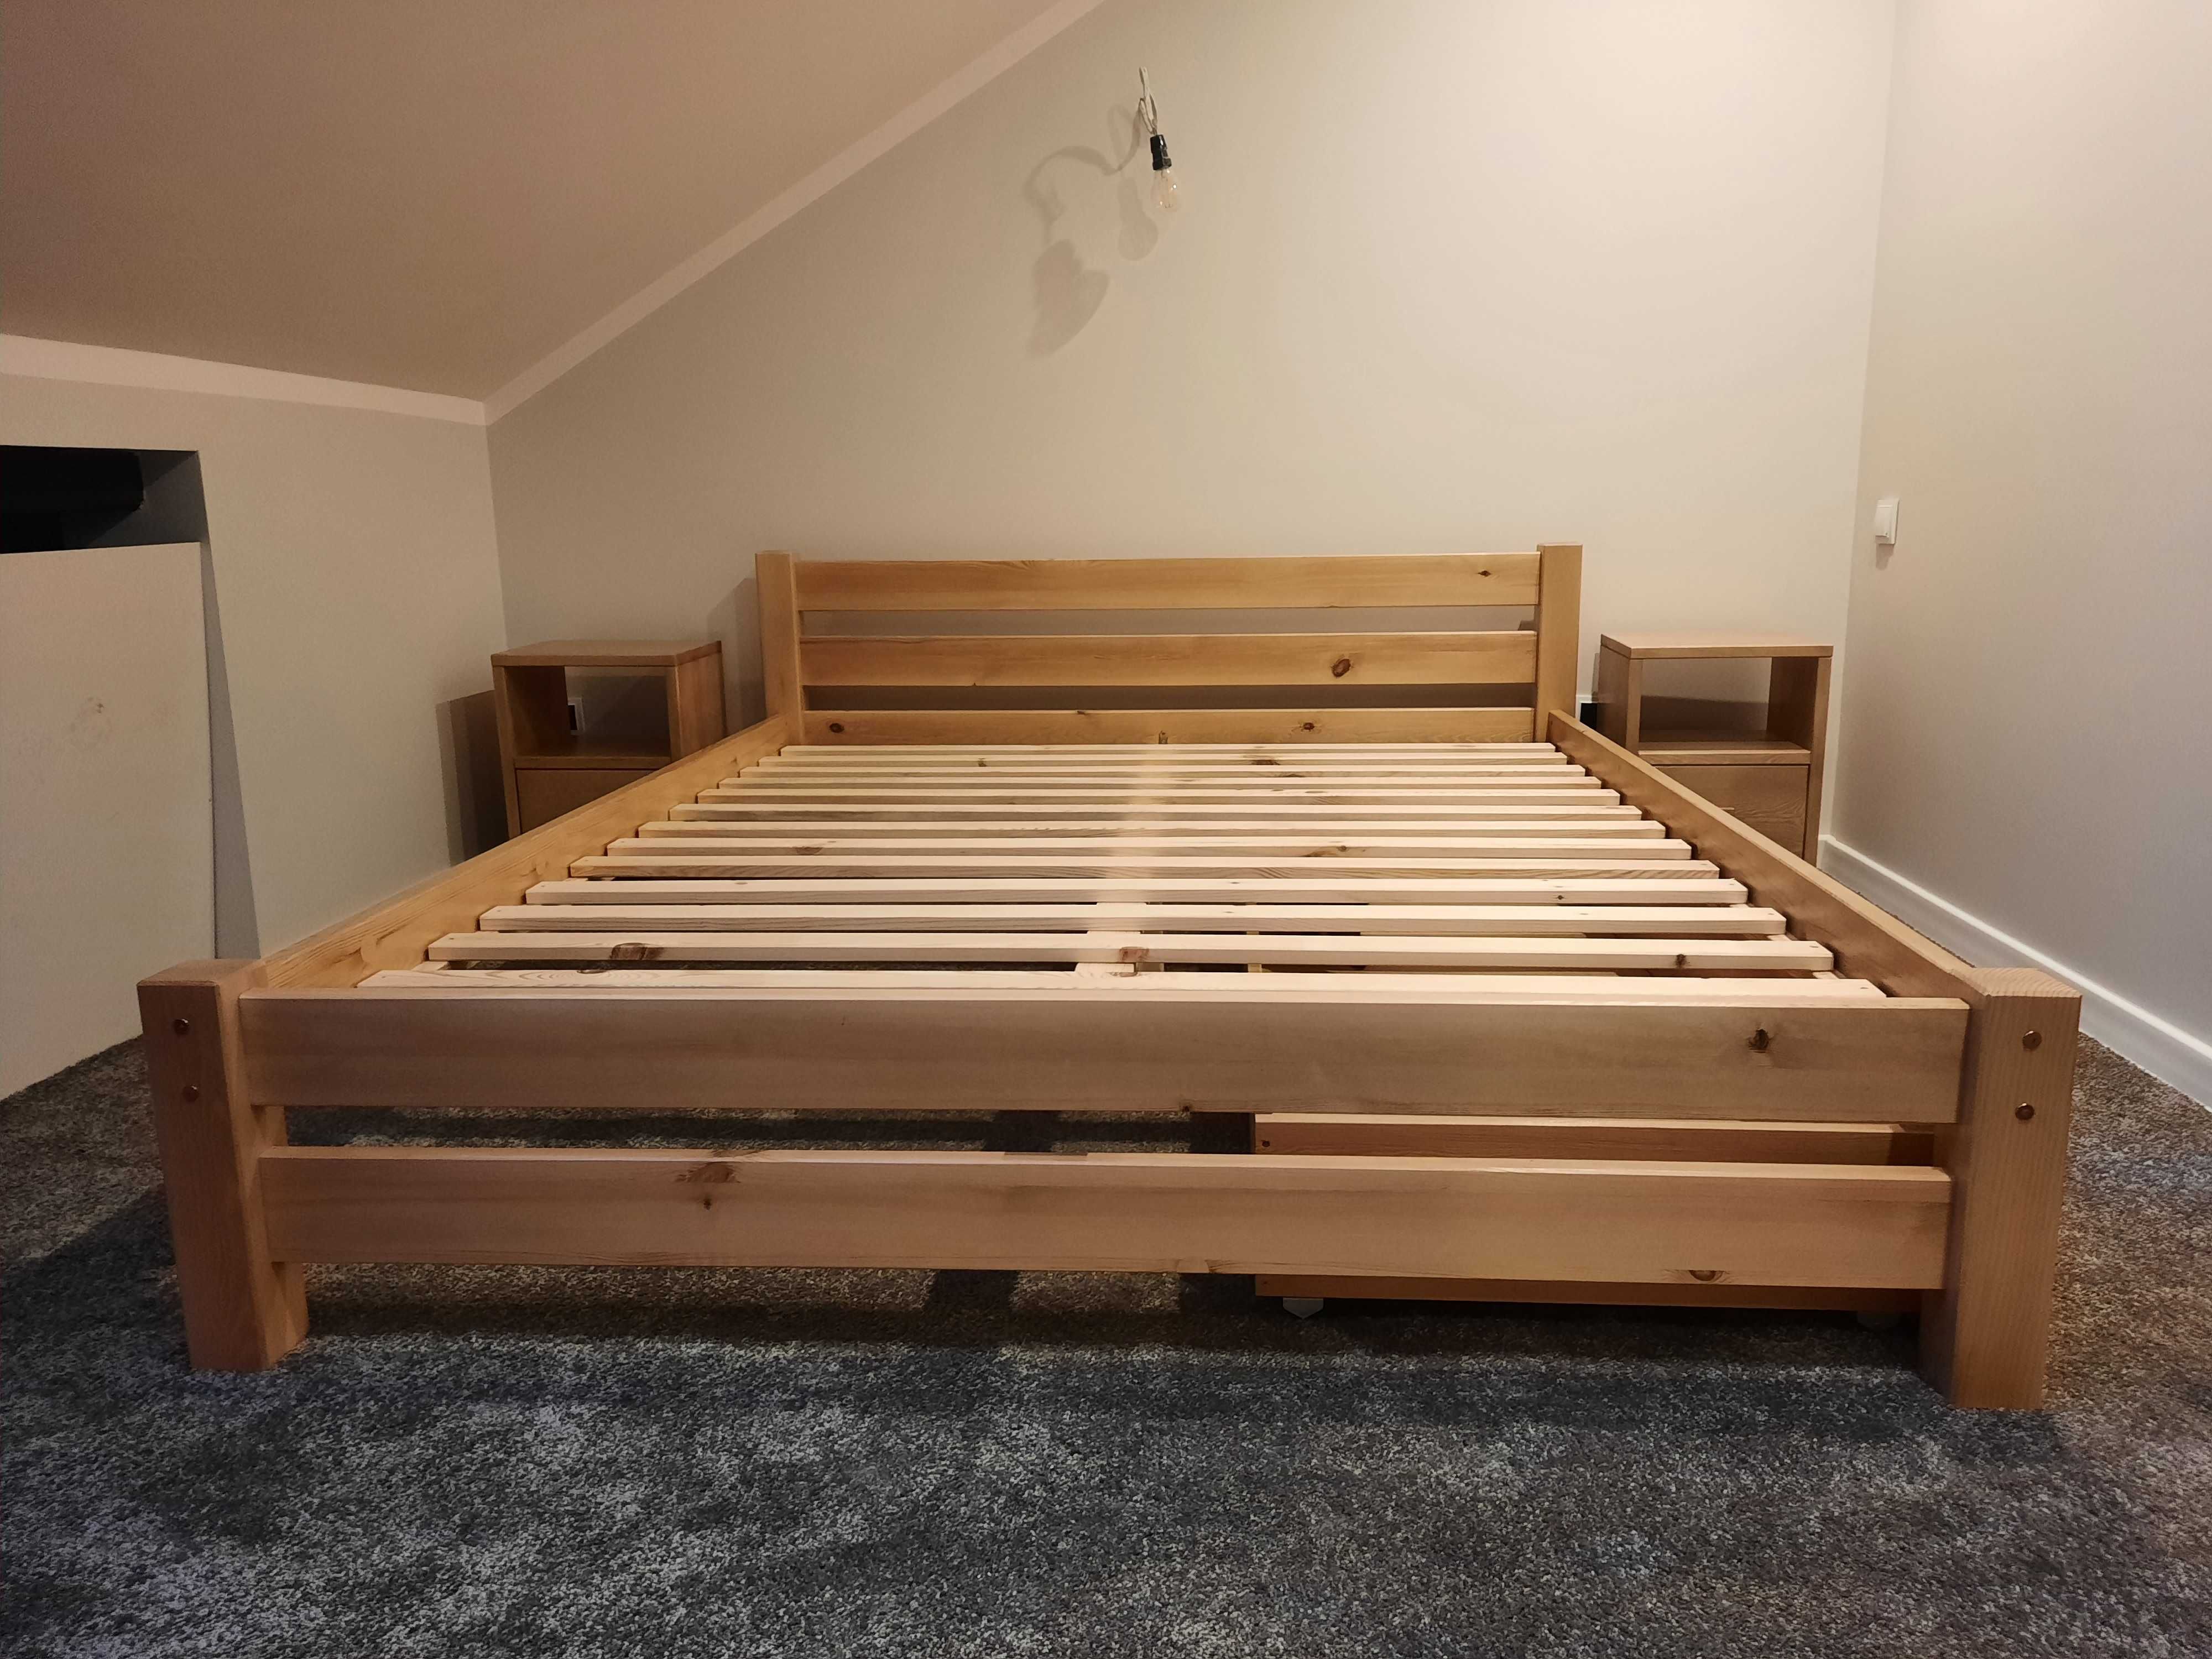 Łóżko drewniane TEXAS producent